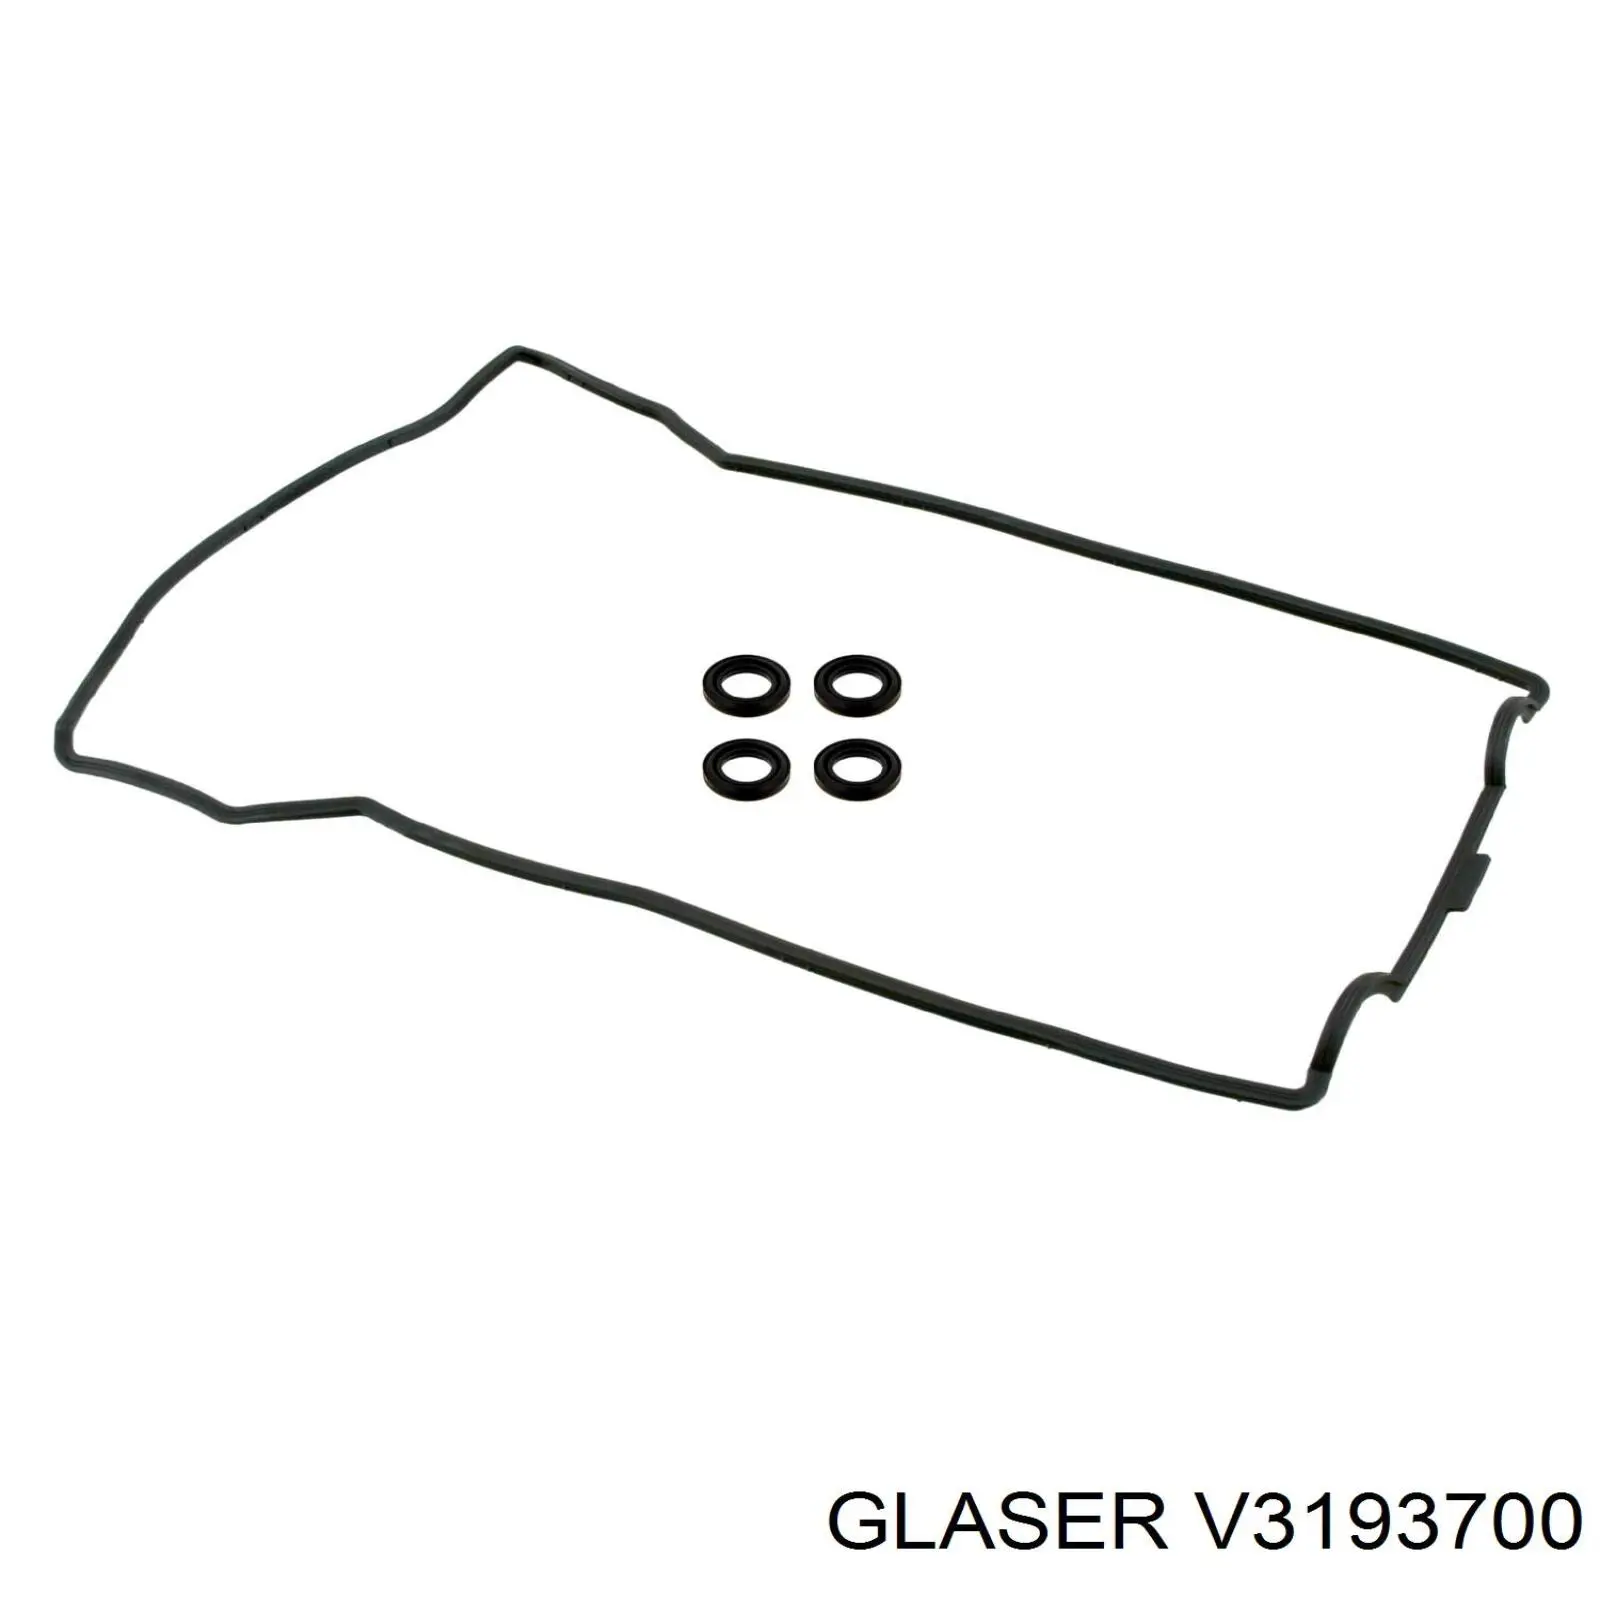 V3193700 Glaser juego de juntas, tapa de culata de cilindro, anillo de junta